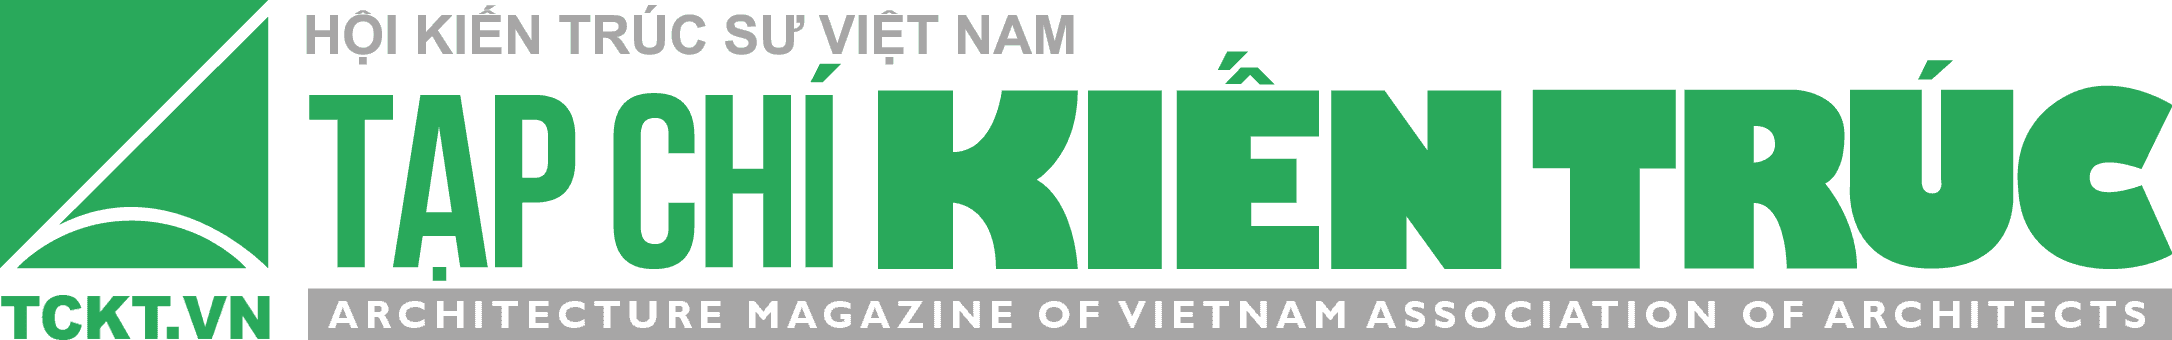 Tạp chí Kiến trúc – Hội Kiến trúc sư Việt Nam